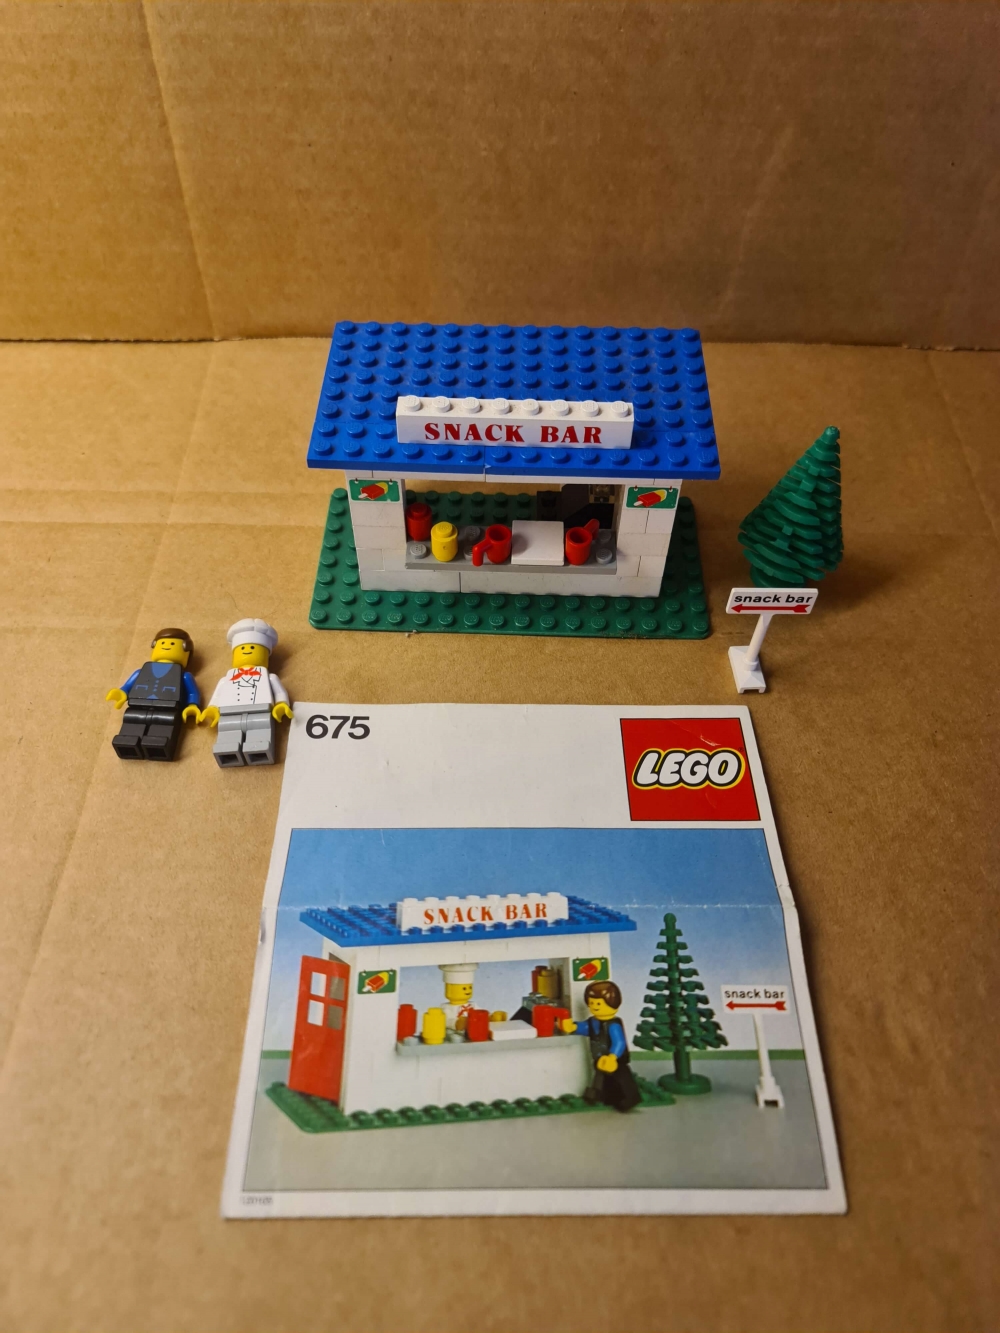 Sett 675 fra Lego Classic Town serien.
Komplett med manual.  Noe bruksmerker og nyasneforskjeller grunnet alder.
